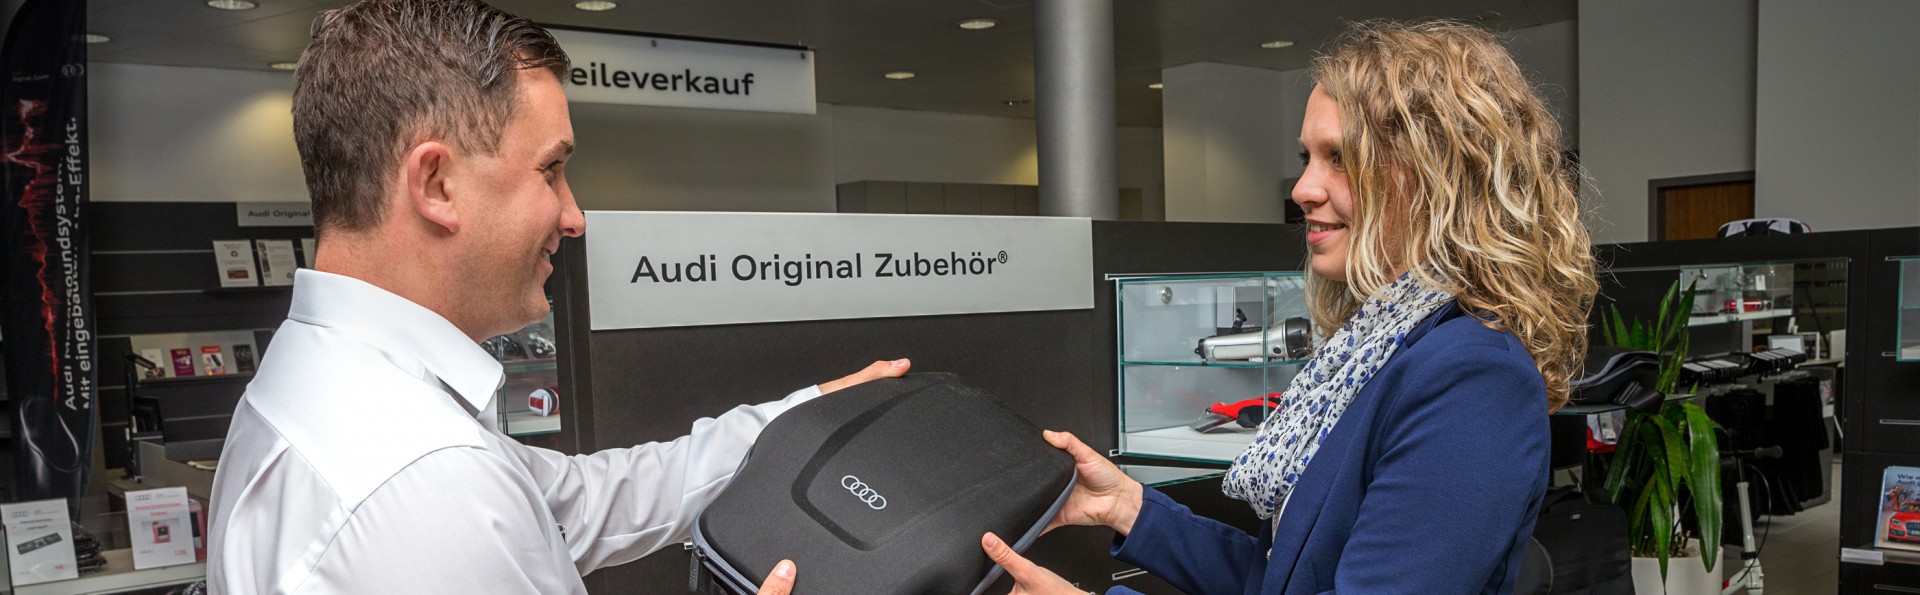 Audi Original Zubehör Katalog  Audi Zentrum München Hochstraße